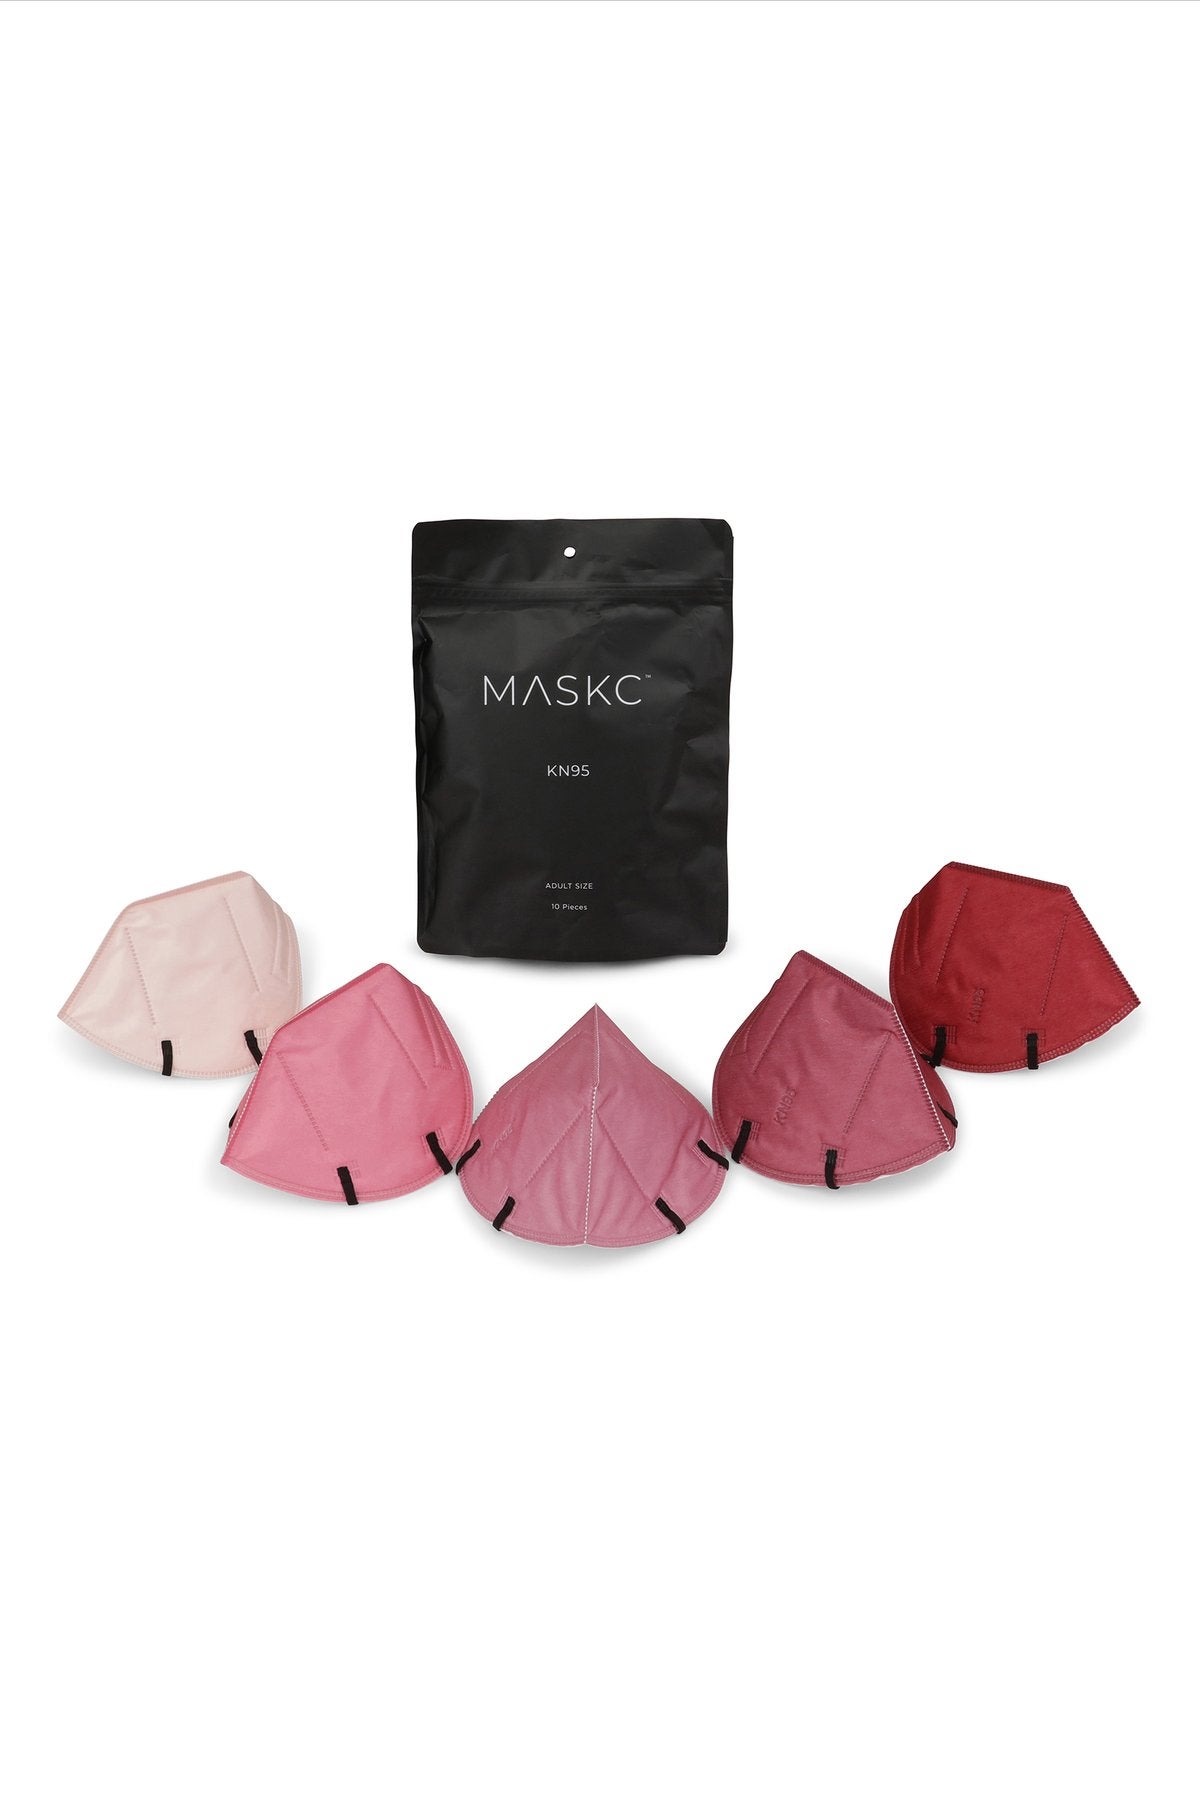 MASKC Blush Tones Variety K95 Face Masks - 10 Pack